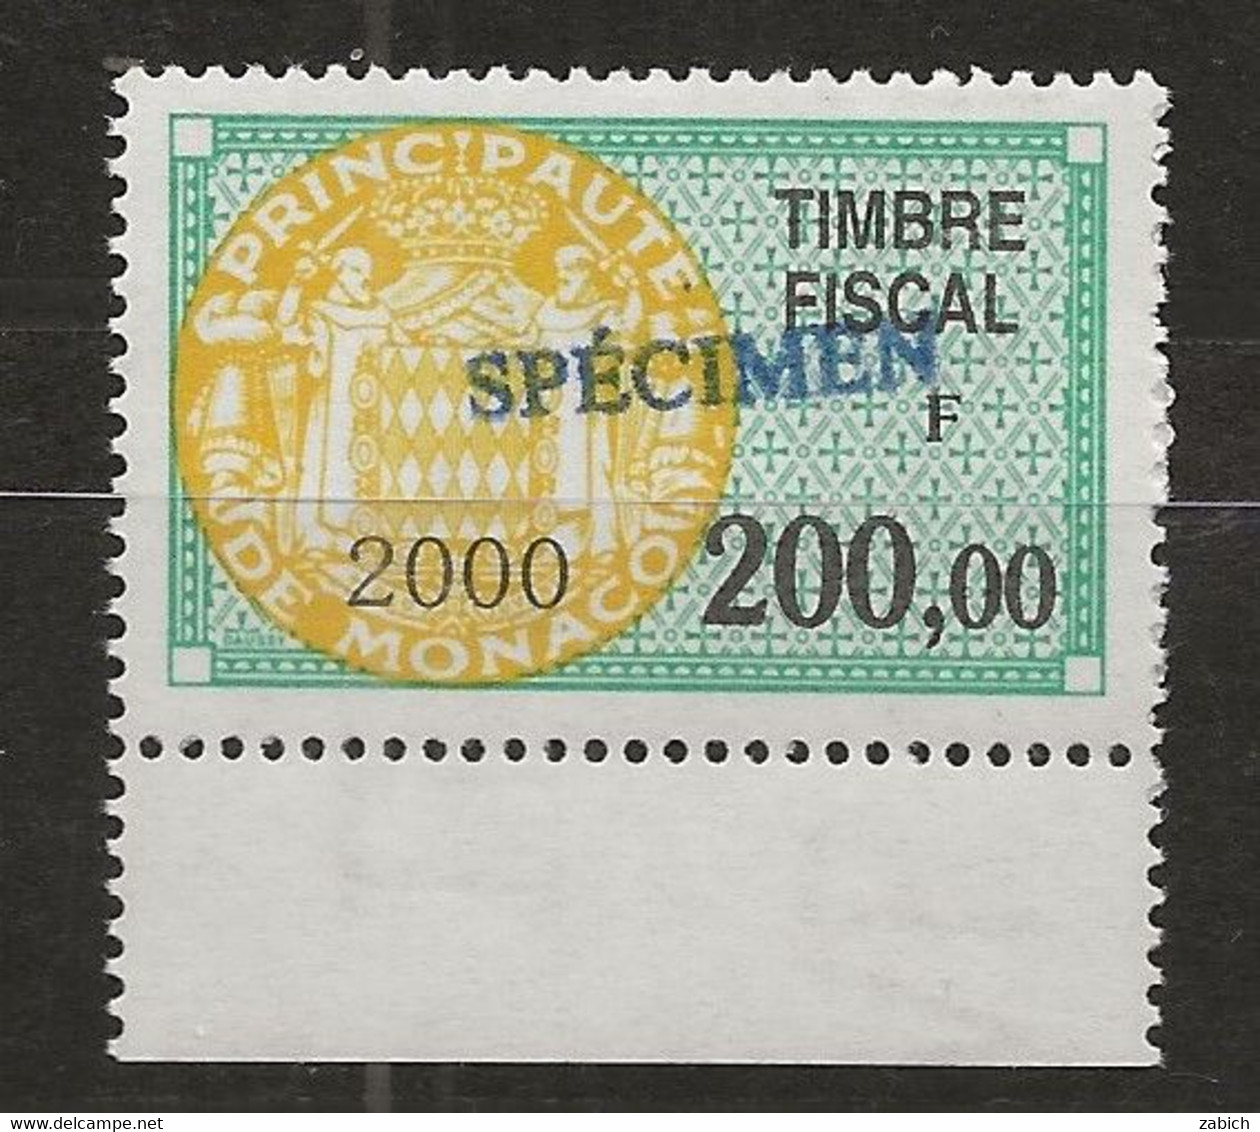 TIMBRES FISCAUX DE MONACO SERIE UNIFIEE N°98 200F Vert, Jaune 2000 Rare Surchargé Spécimen Neuf Gomme Mnh (**) - Revenue